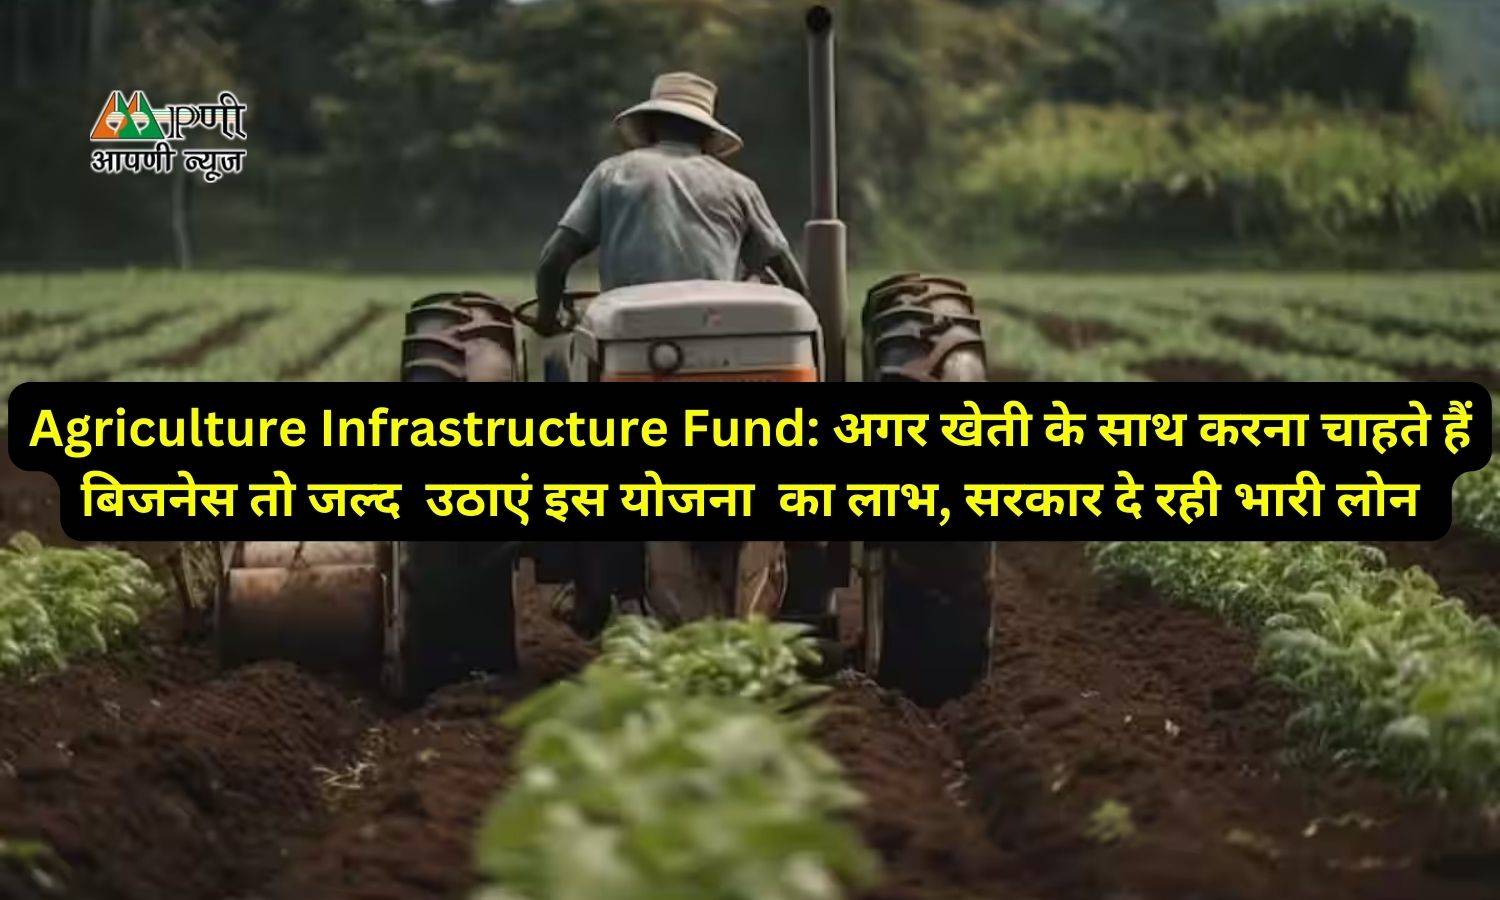 Agriculture Infrastructure Fund: अगर खेती के साथ करना चाहते हैं बिजनेस तो जल्द  उठाएं इस योजना  का लाभ, सरकार दे रही भारी लोन